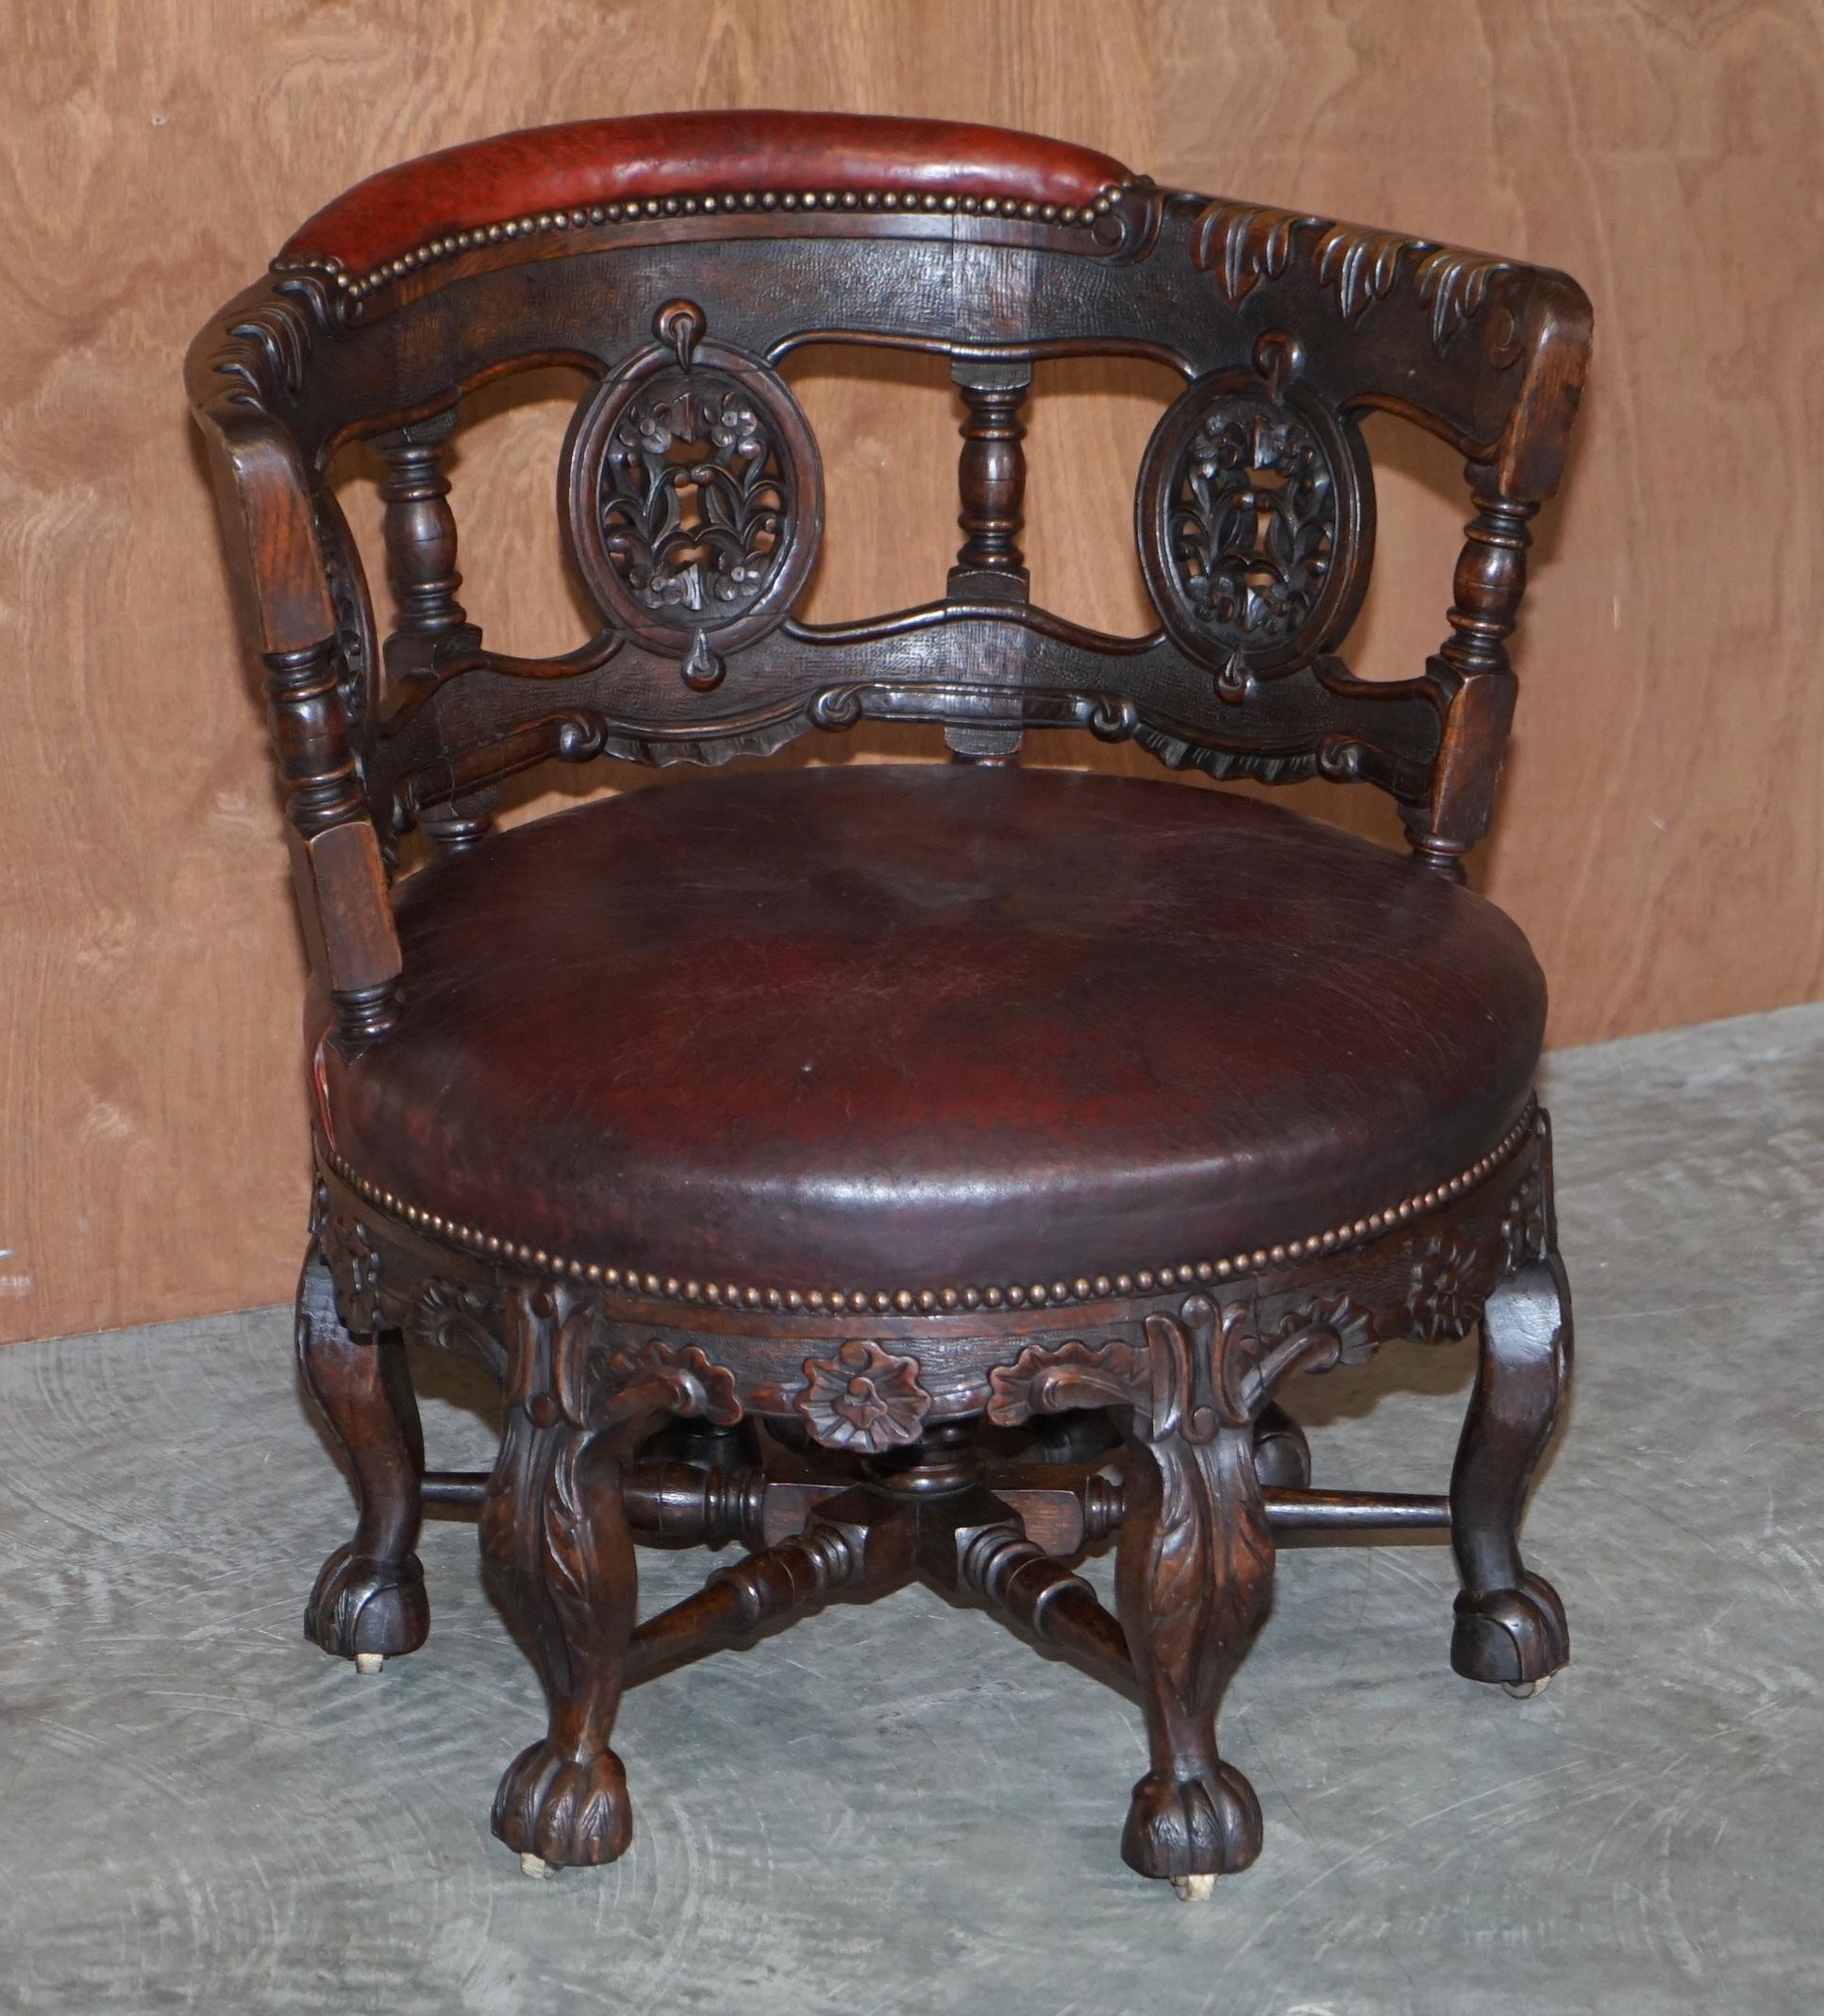 Wir freuen uns, einen hochdekorativen und exquisit gefertigten antiken viktorianischen Burgermeisterstuhl um 1870 anbieten zu können, der auf einem Entwurf aus dem 17.

Ein sehr gut gemacht und dekorative Stuhl, ist es stark von oben nach unten